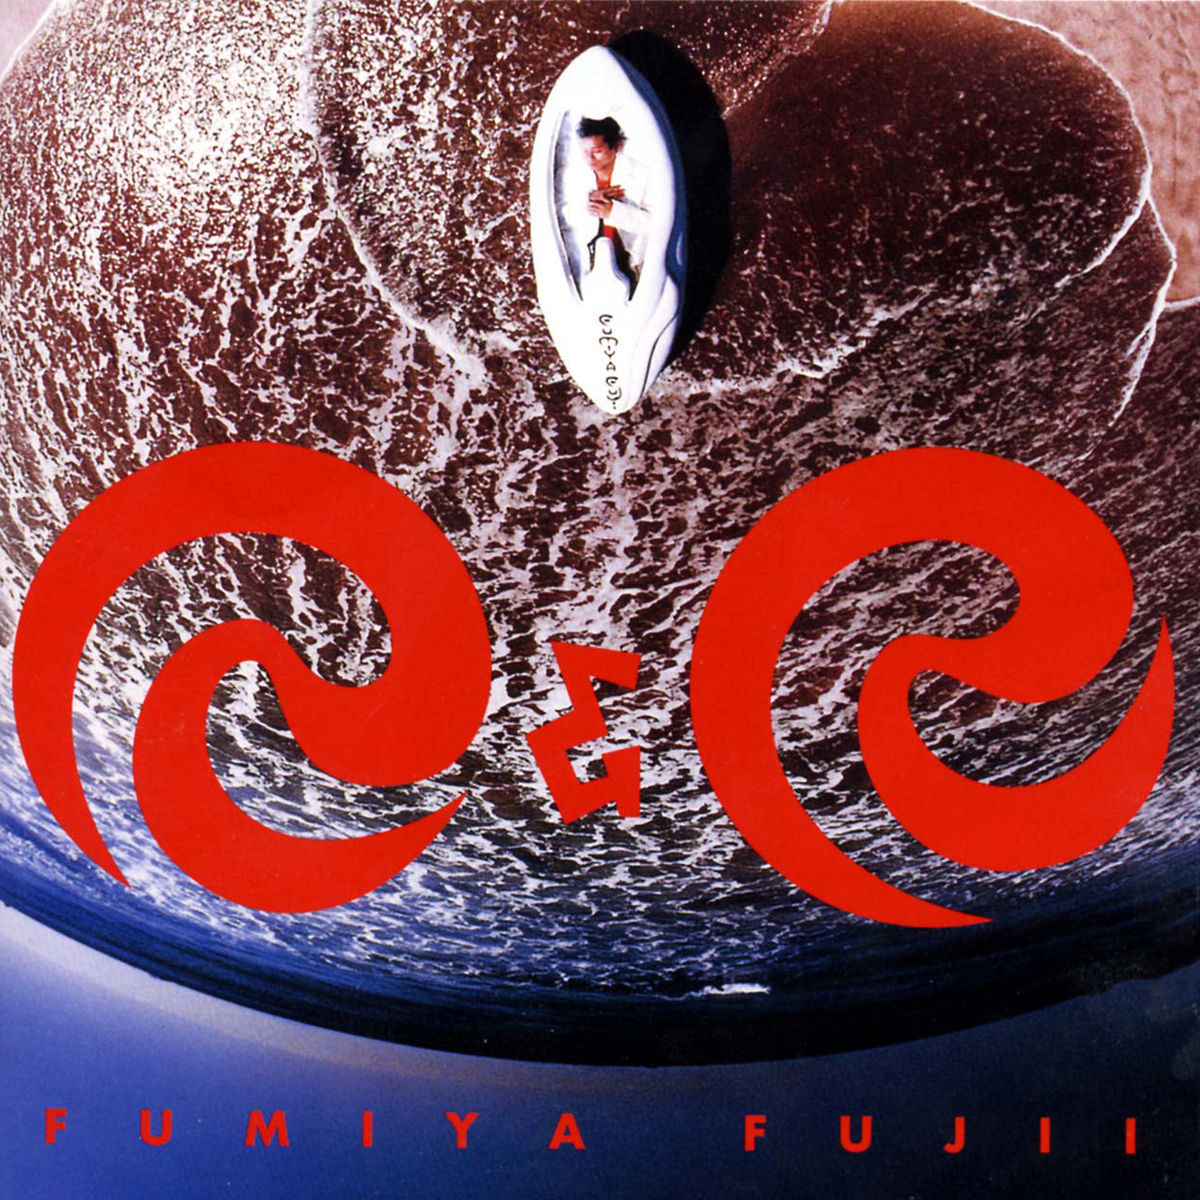 Jpop80ss2: Fumiya Fujii (藤井フミヤ)